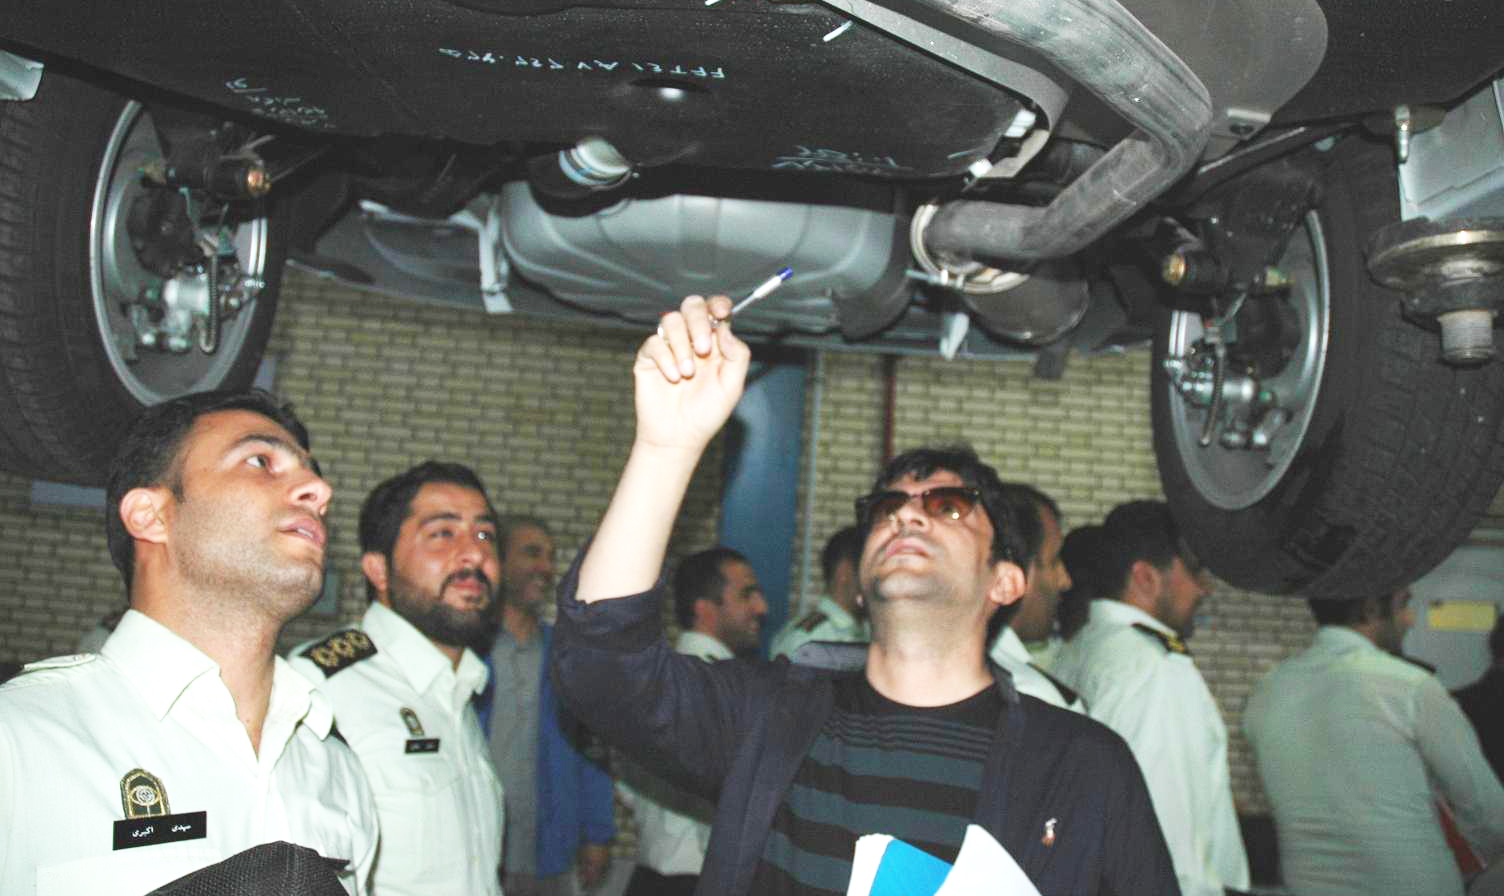 آموزش افسران پلیس آگاهی در خصوص اصالت وسائط نقلیه در ایران خودرو